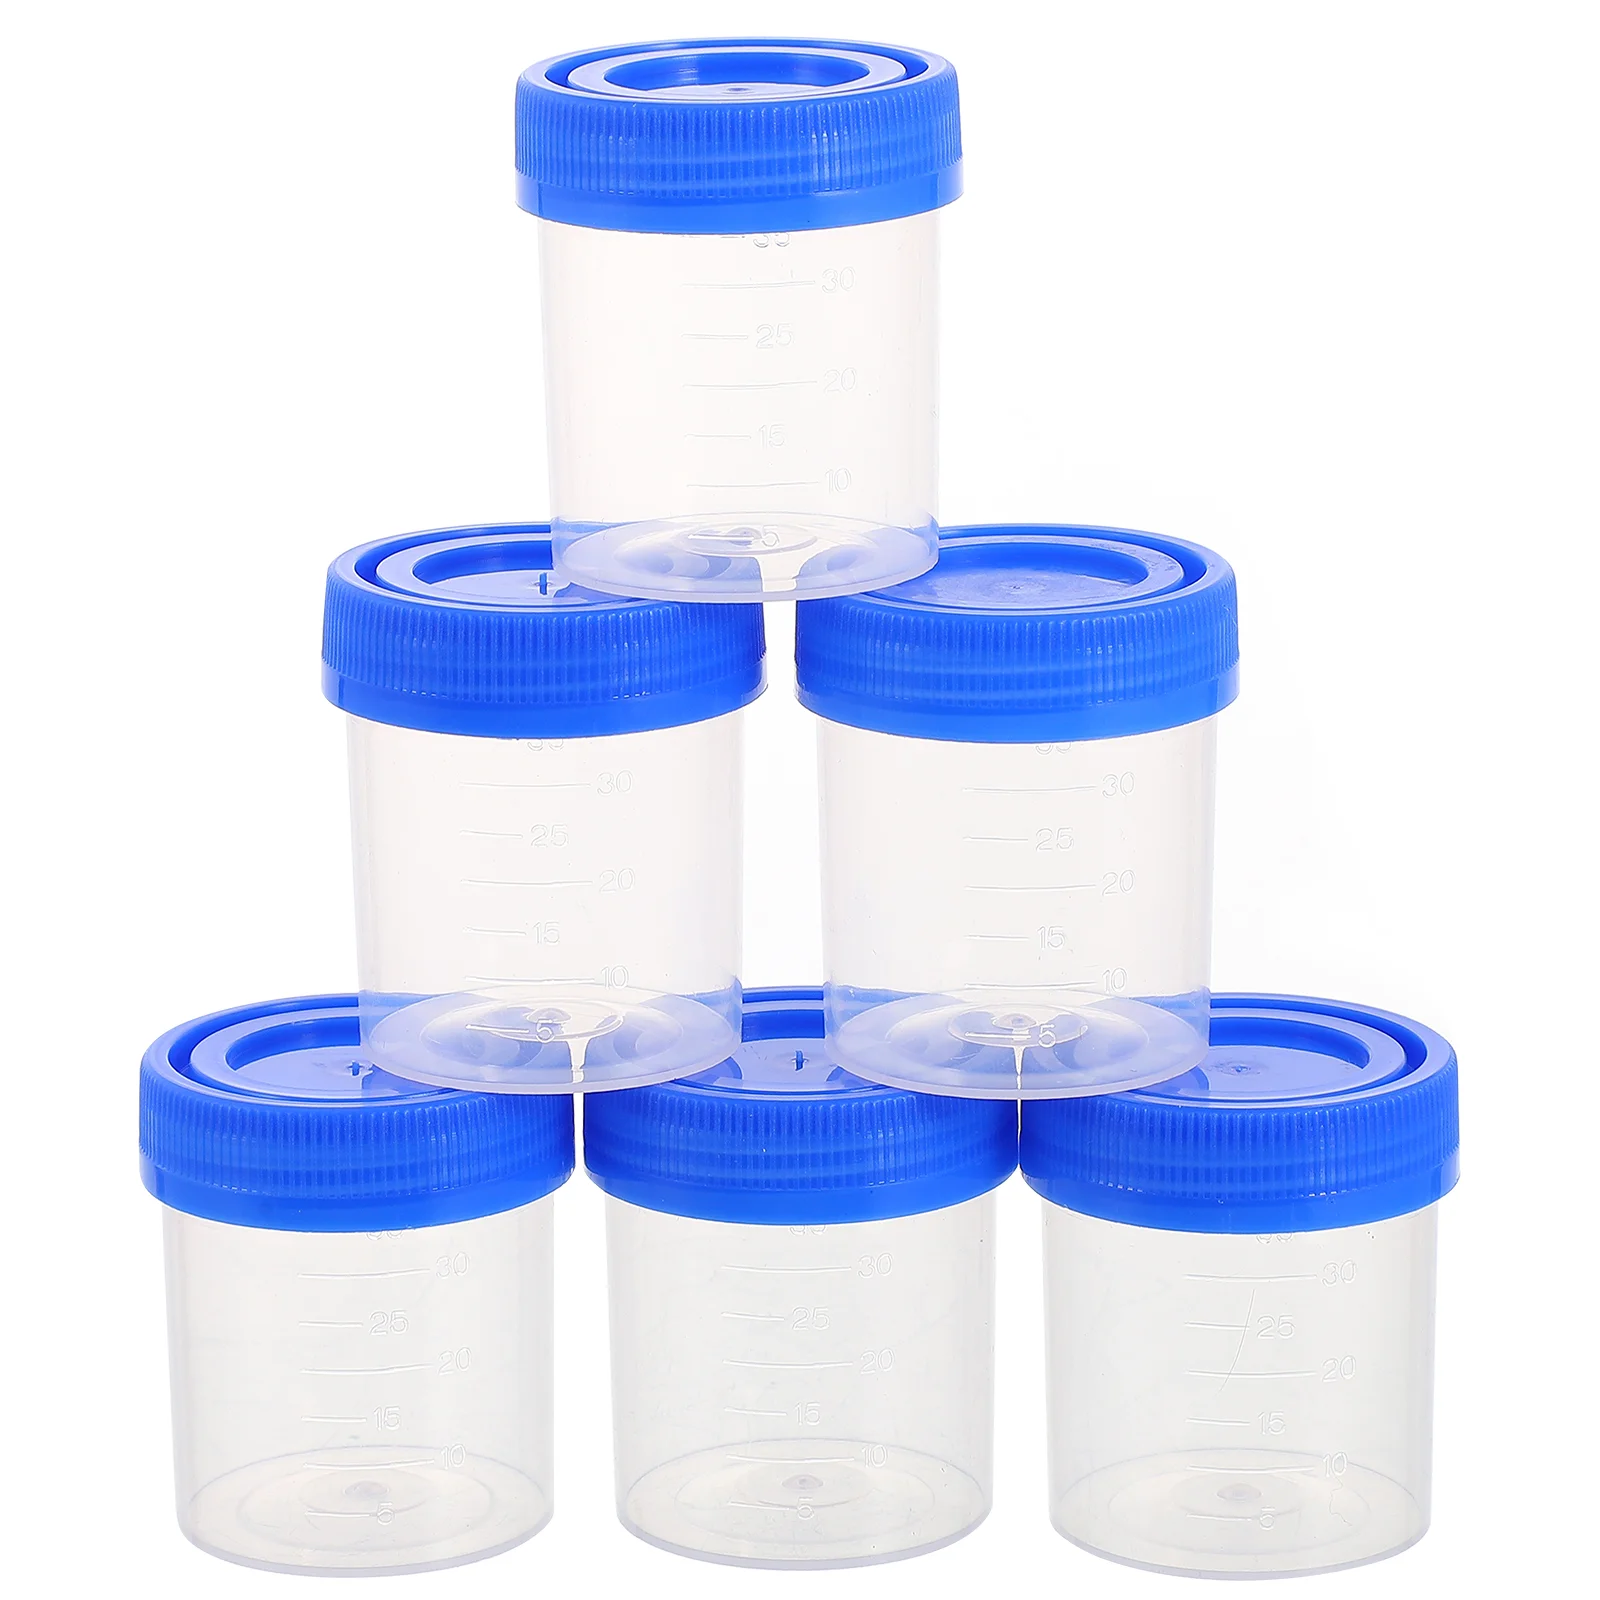 

50 шт. стаканчиков, стаканчики для образцов с винтовыми крышками для теста на беременность, тест на рН, 40 мл, голубой прозрачный